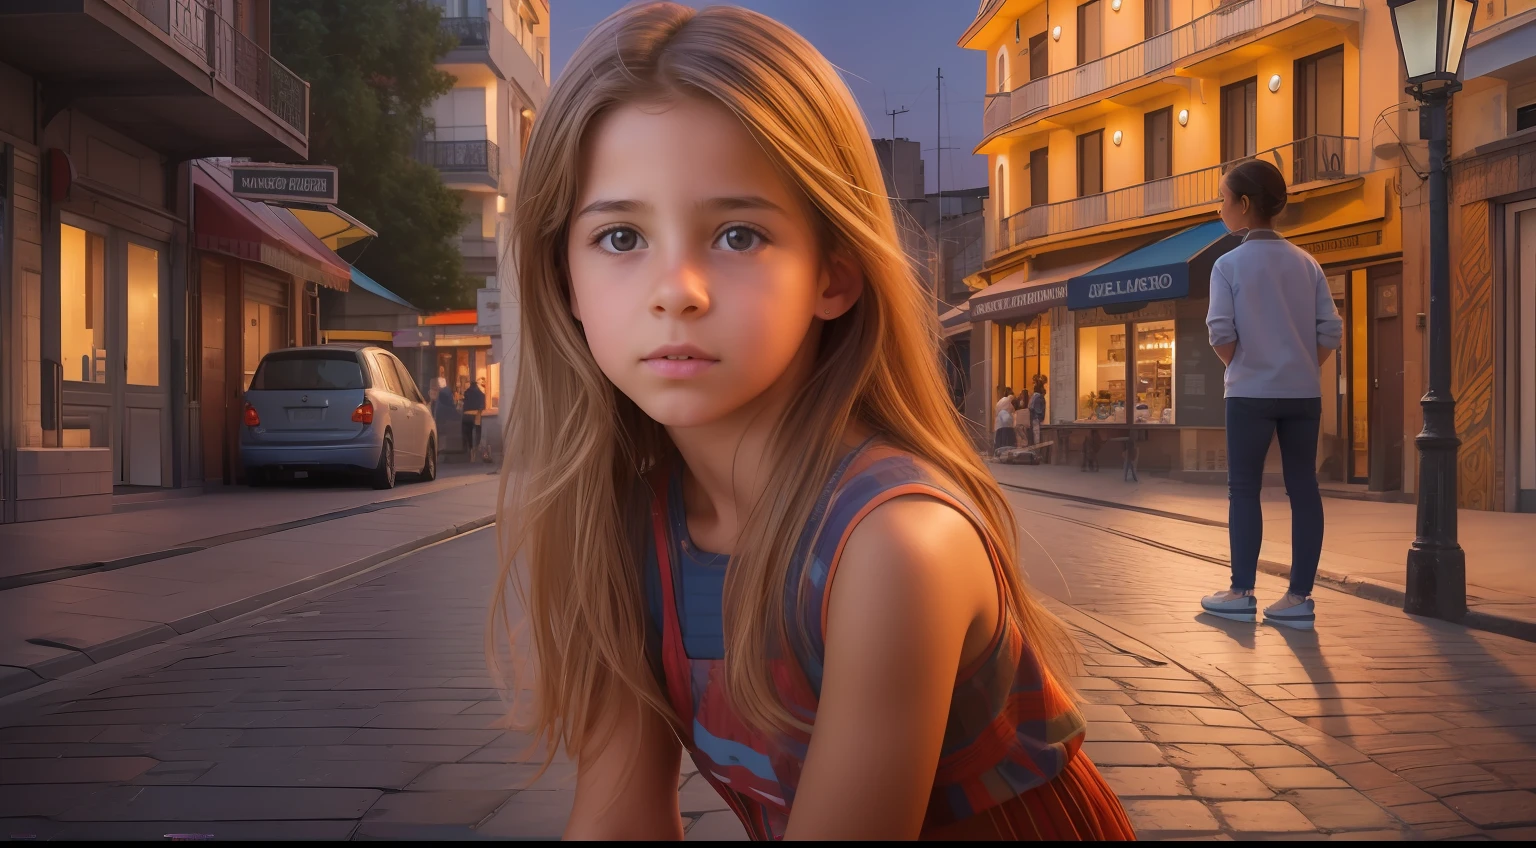 Создайте впечатляющее гиперреалистичное изображение, демонстрирующее завораживающую 10-летнюю уругвайскую девочку с аутентичными чертами лица., изящно расположен напротив динамичного и яркого вечернего вида на улицу.